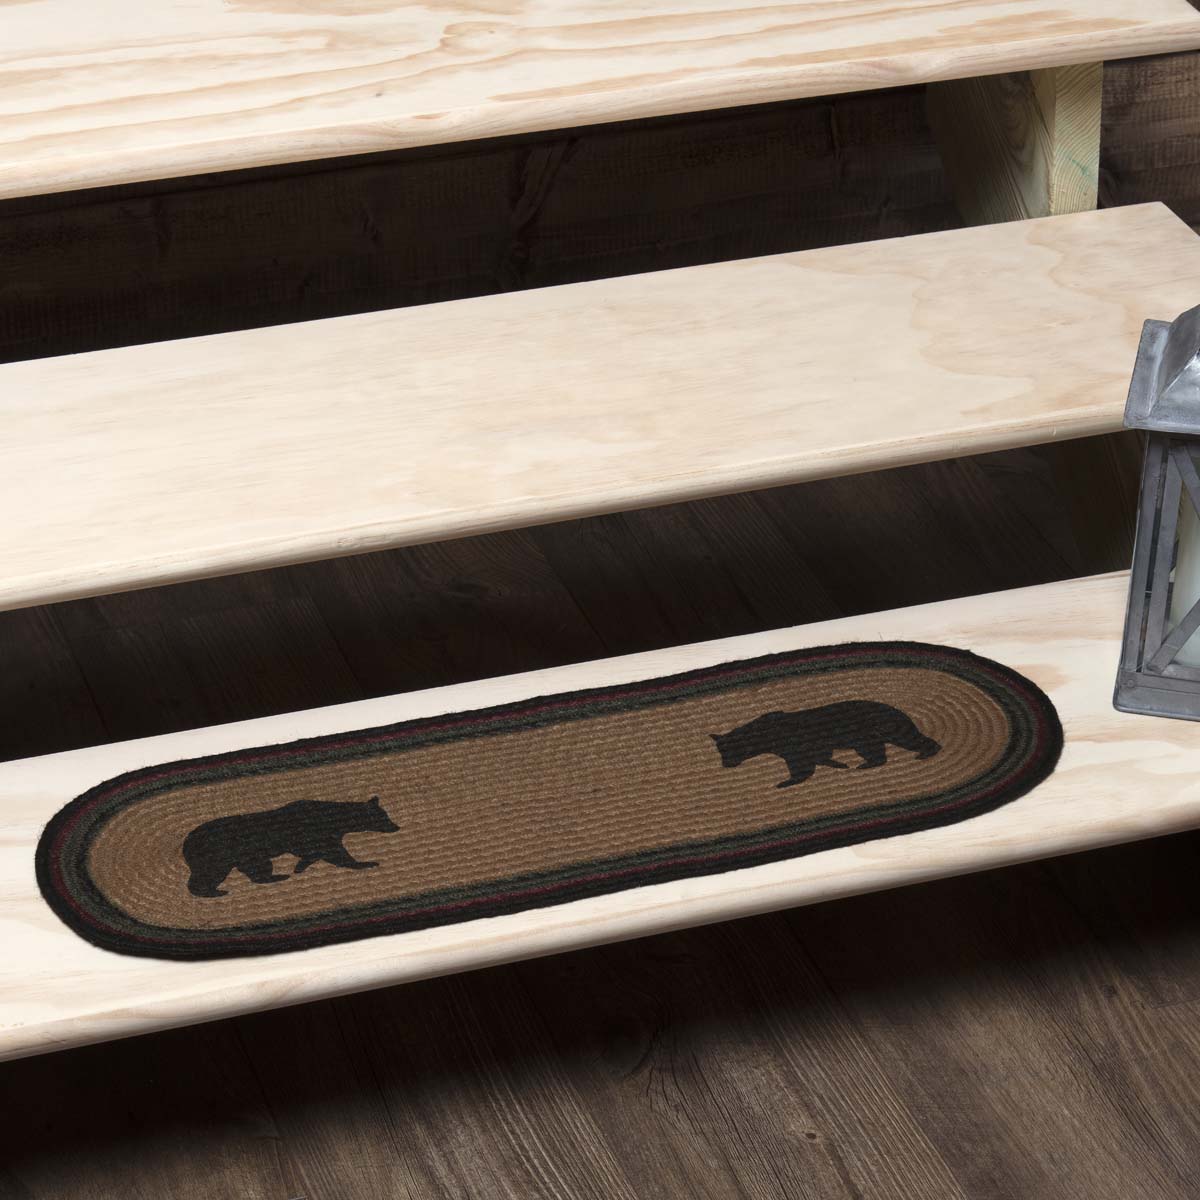 Oak & Asher Wyatt Stenciled Bear Jute Stair Tread Oval Latex 8.5x27 By VHC Brands